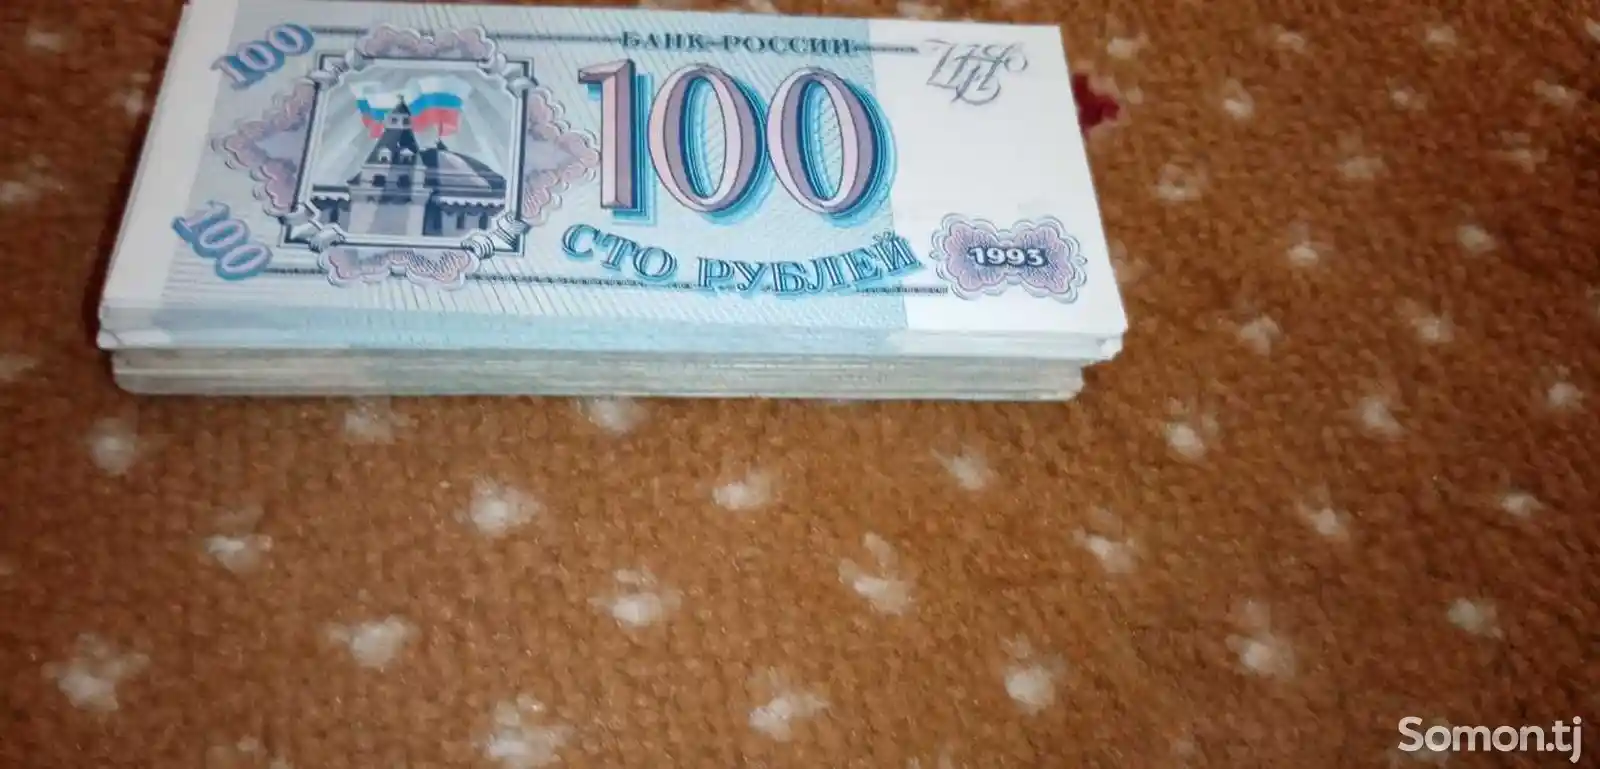 100 рубль купюра СССР-3